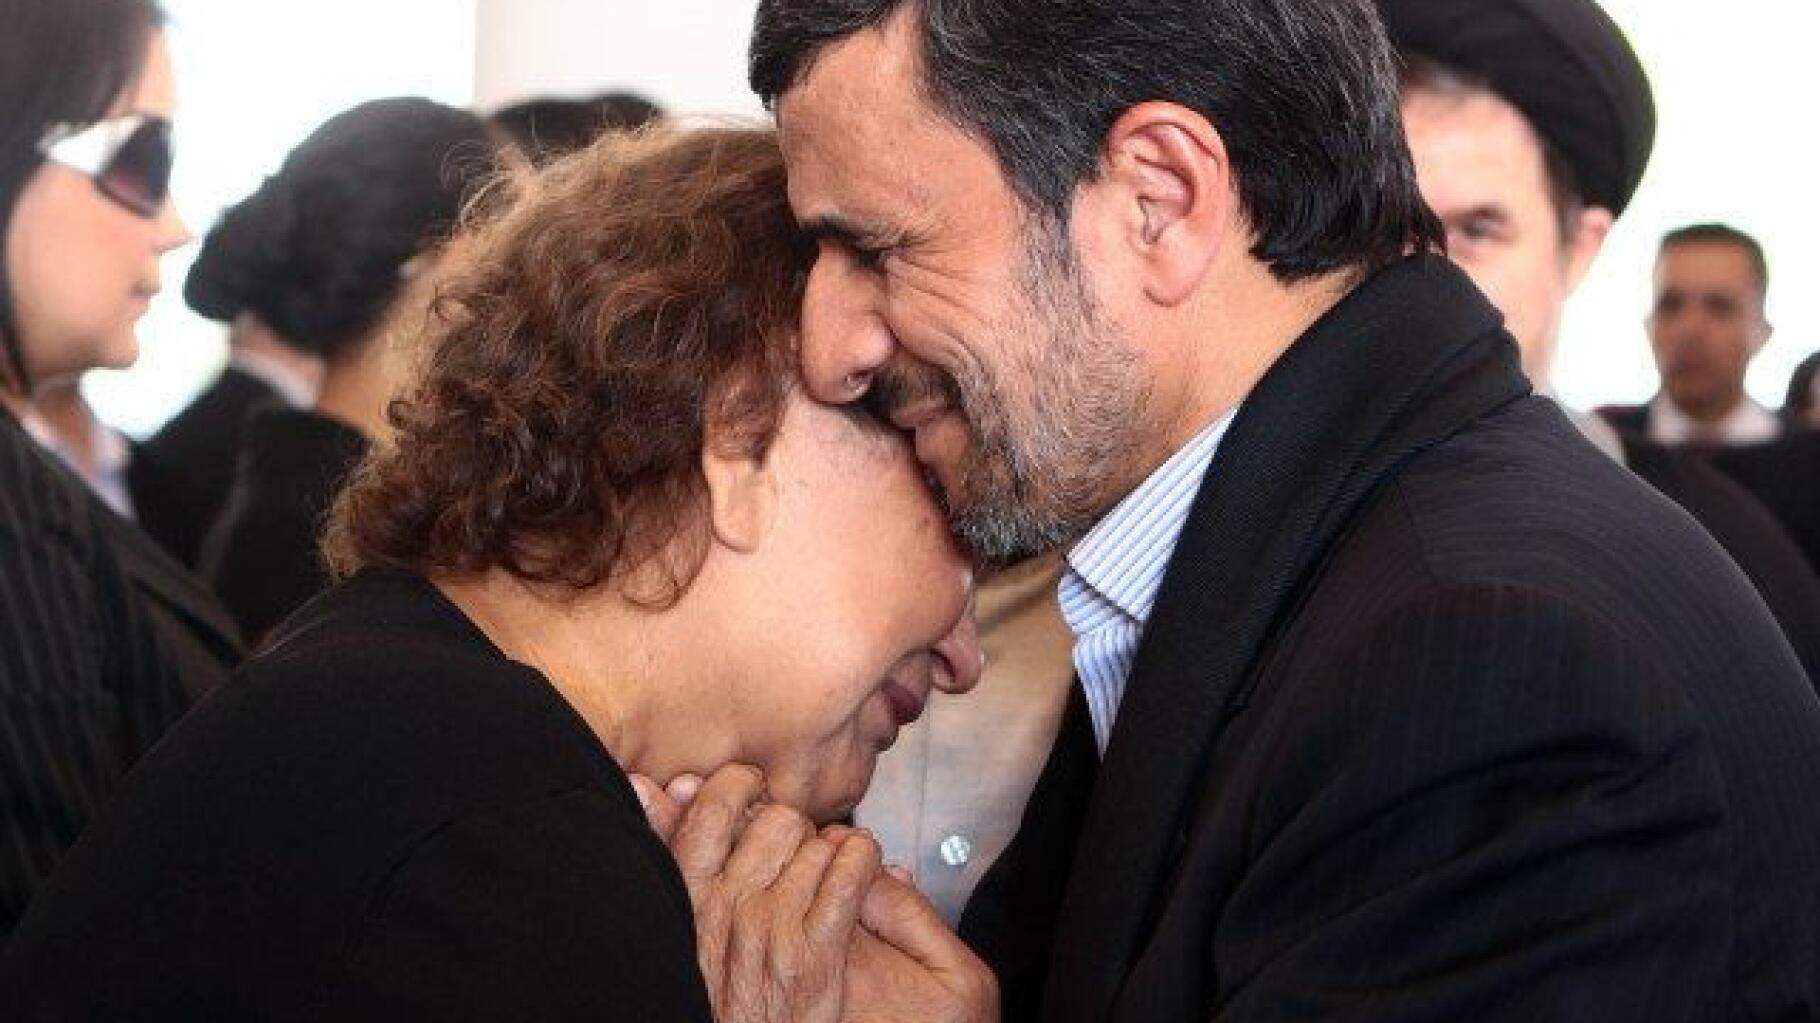 Une photo de Mahmoud Ahmadinejad aux funérailles d'Hugo Chavez choque les  intégristes iraniens